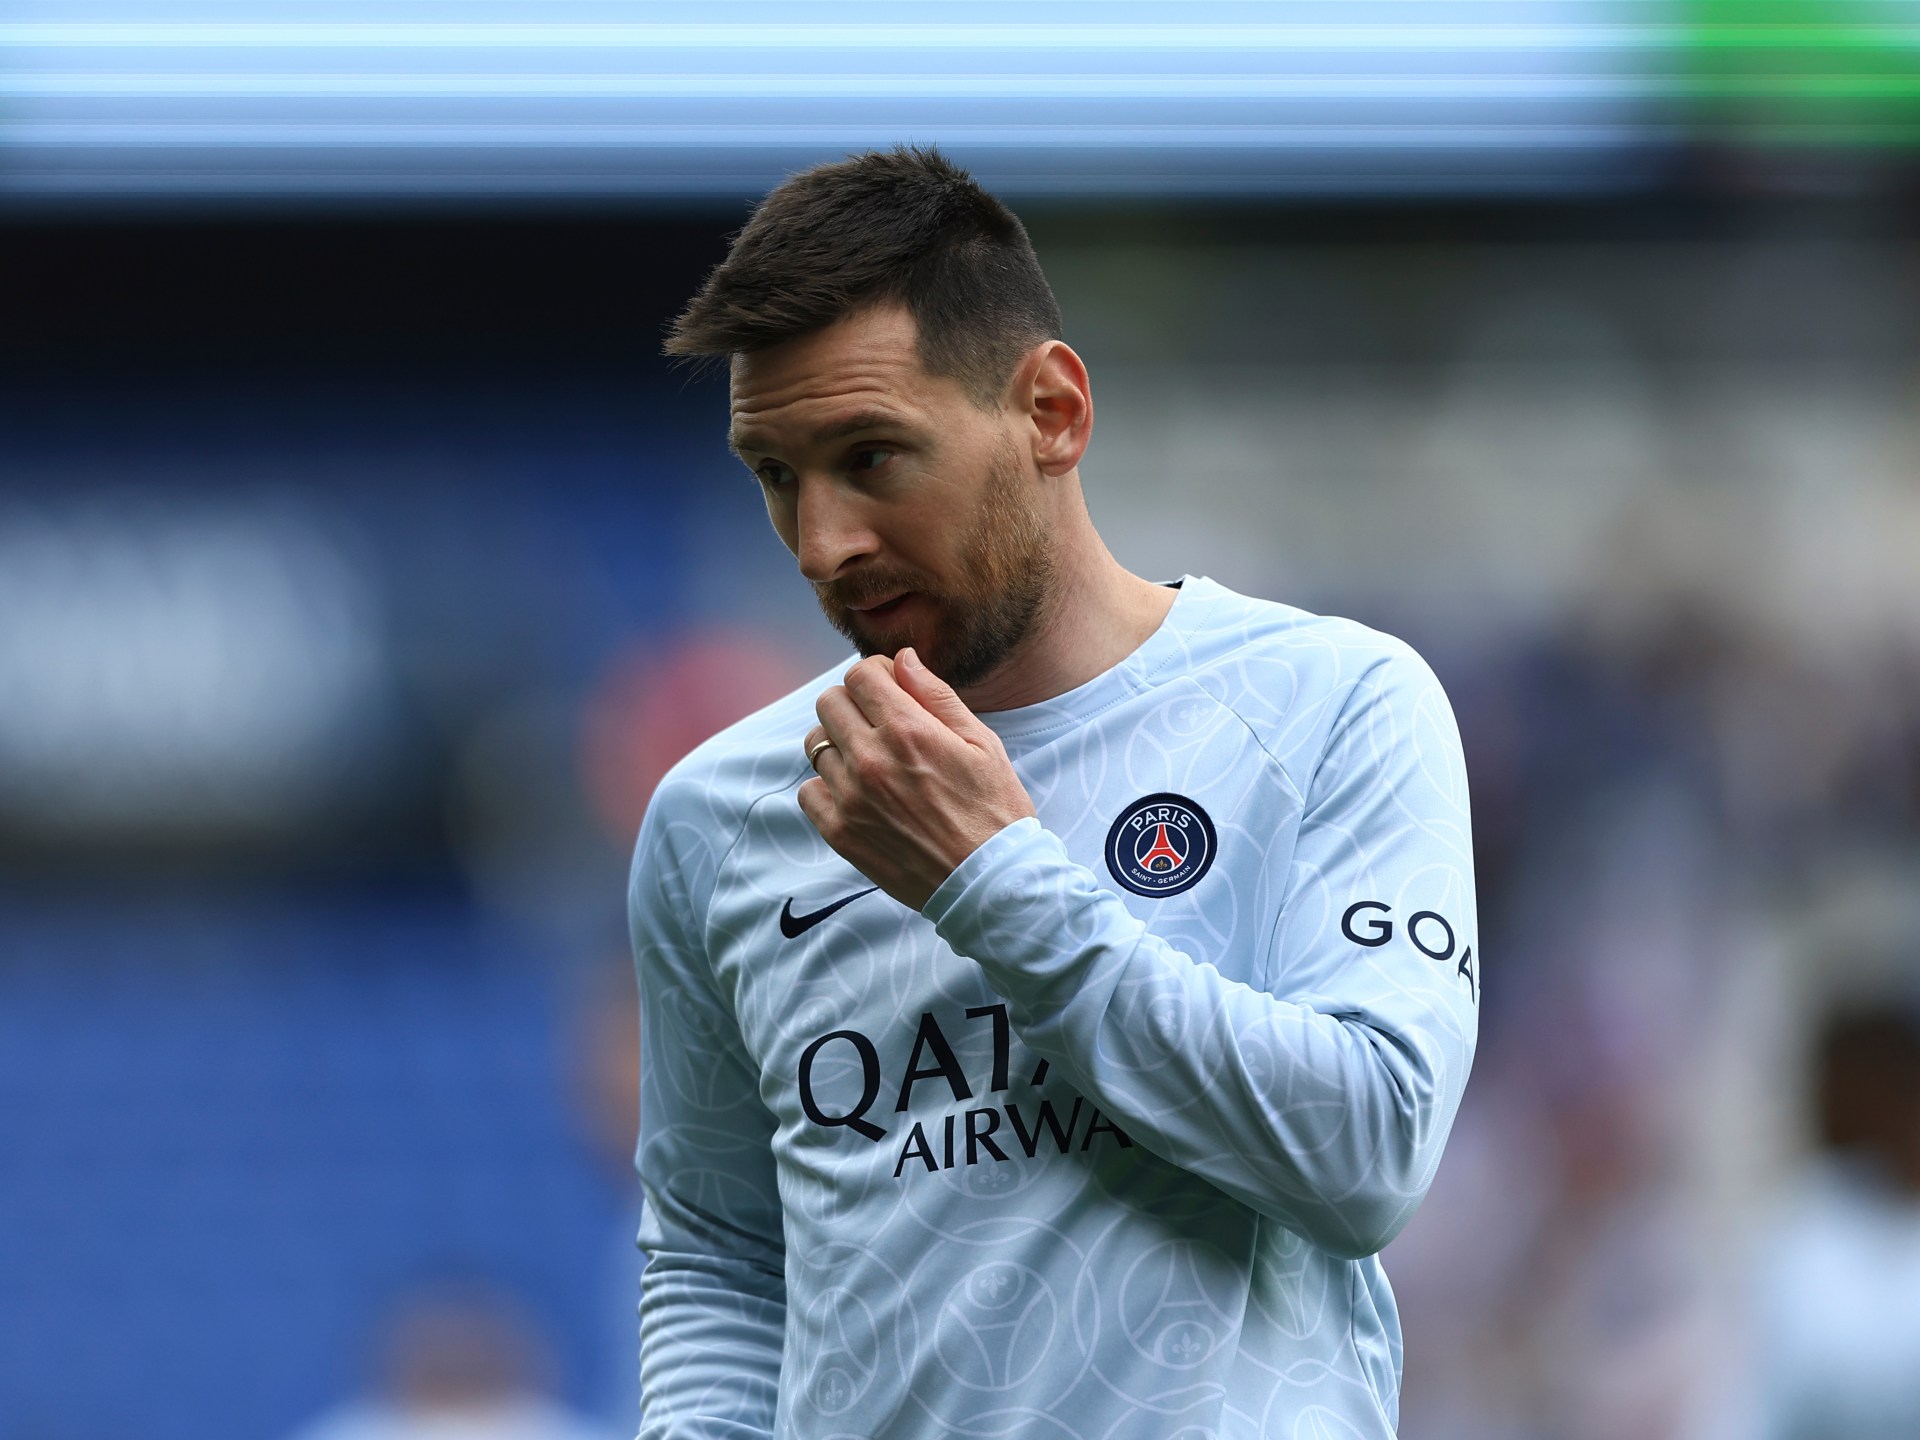 Messi meminta maaf kepada PSG atas perjalanan tanpa izin di Arab Saudi |  Berita Sepak Bola